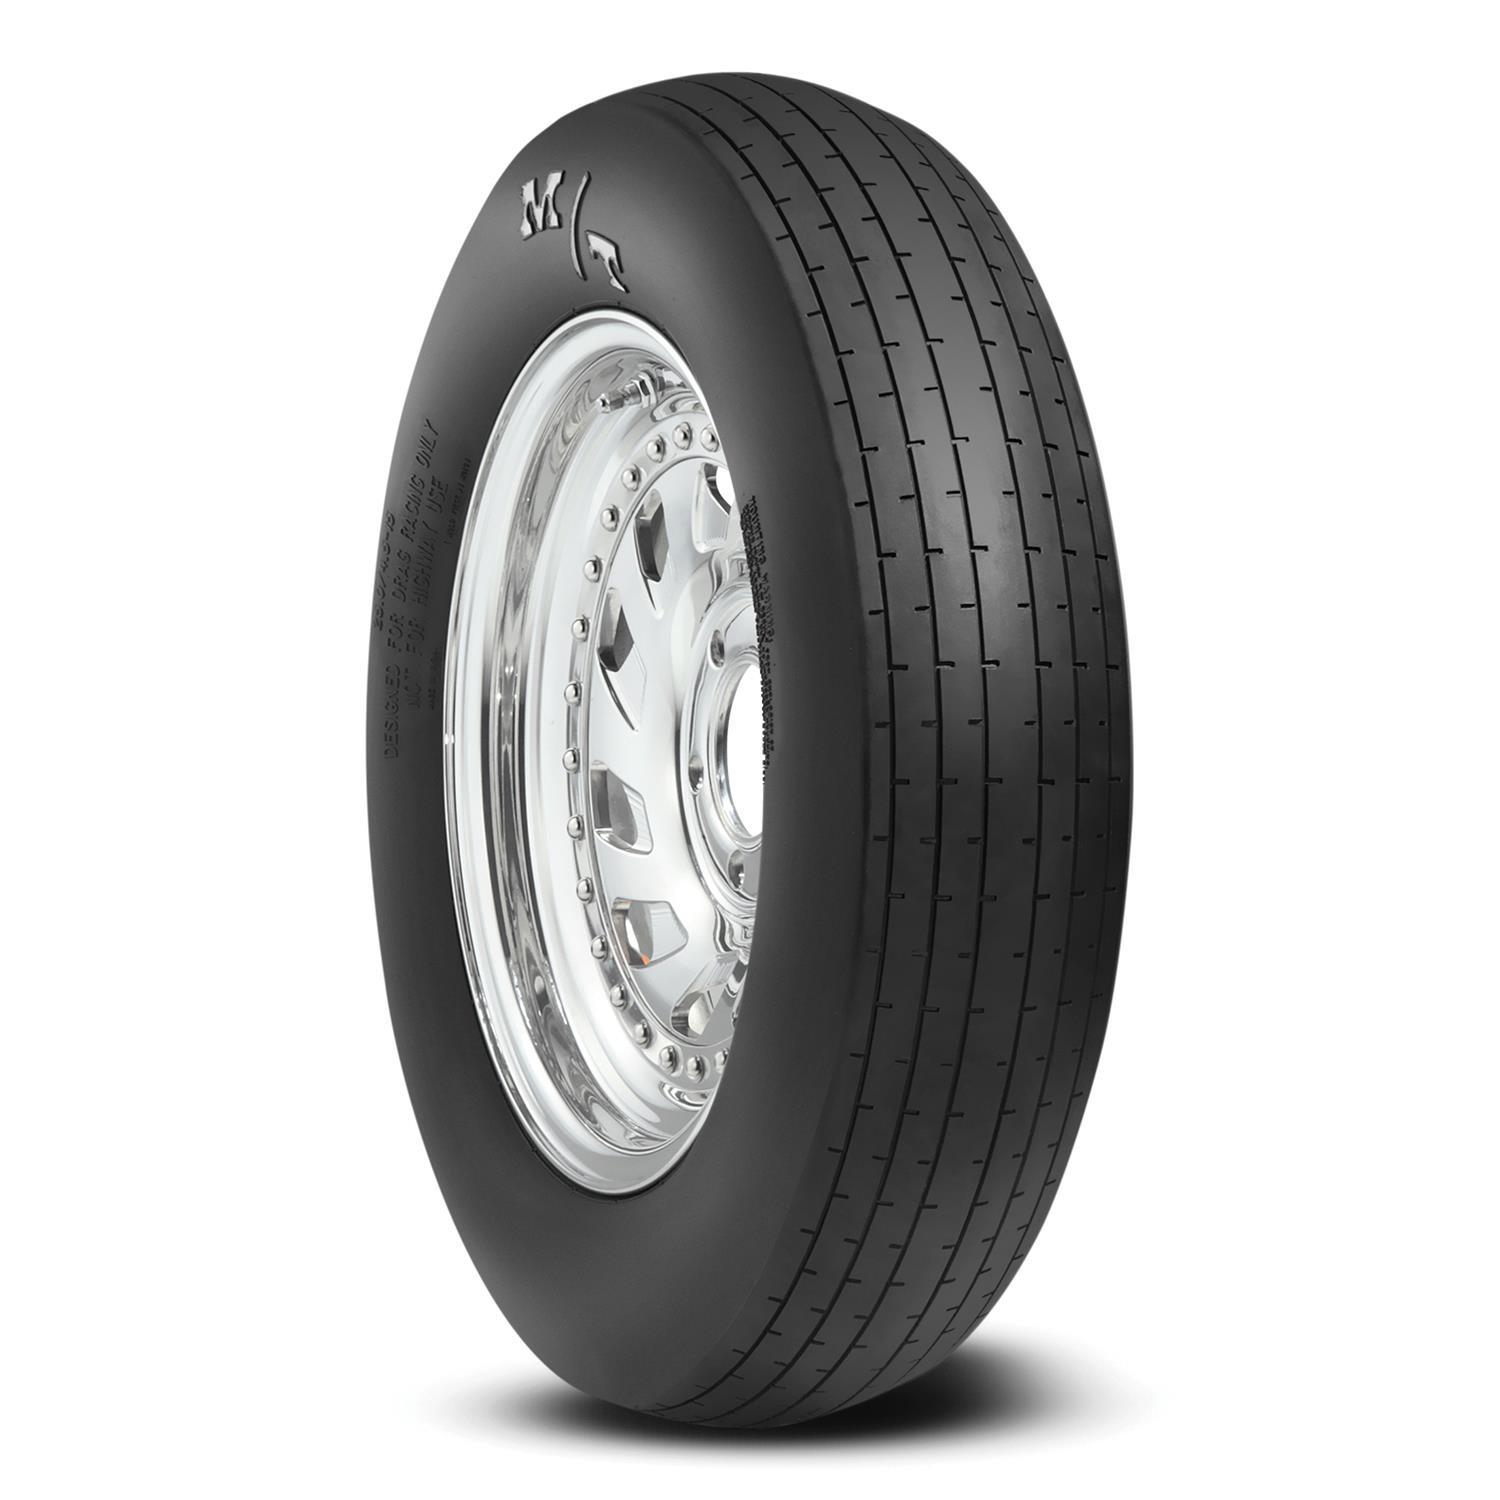 28.0/4.5-15 ET Drag Front Tire - 250933